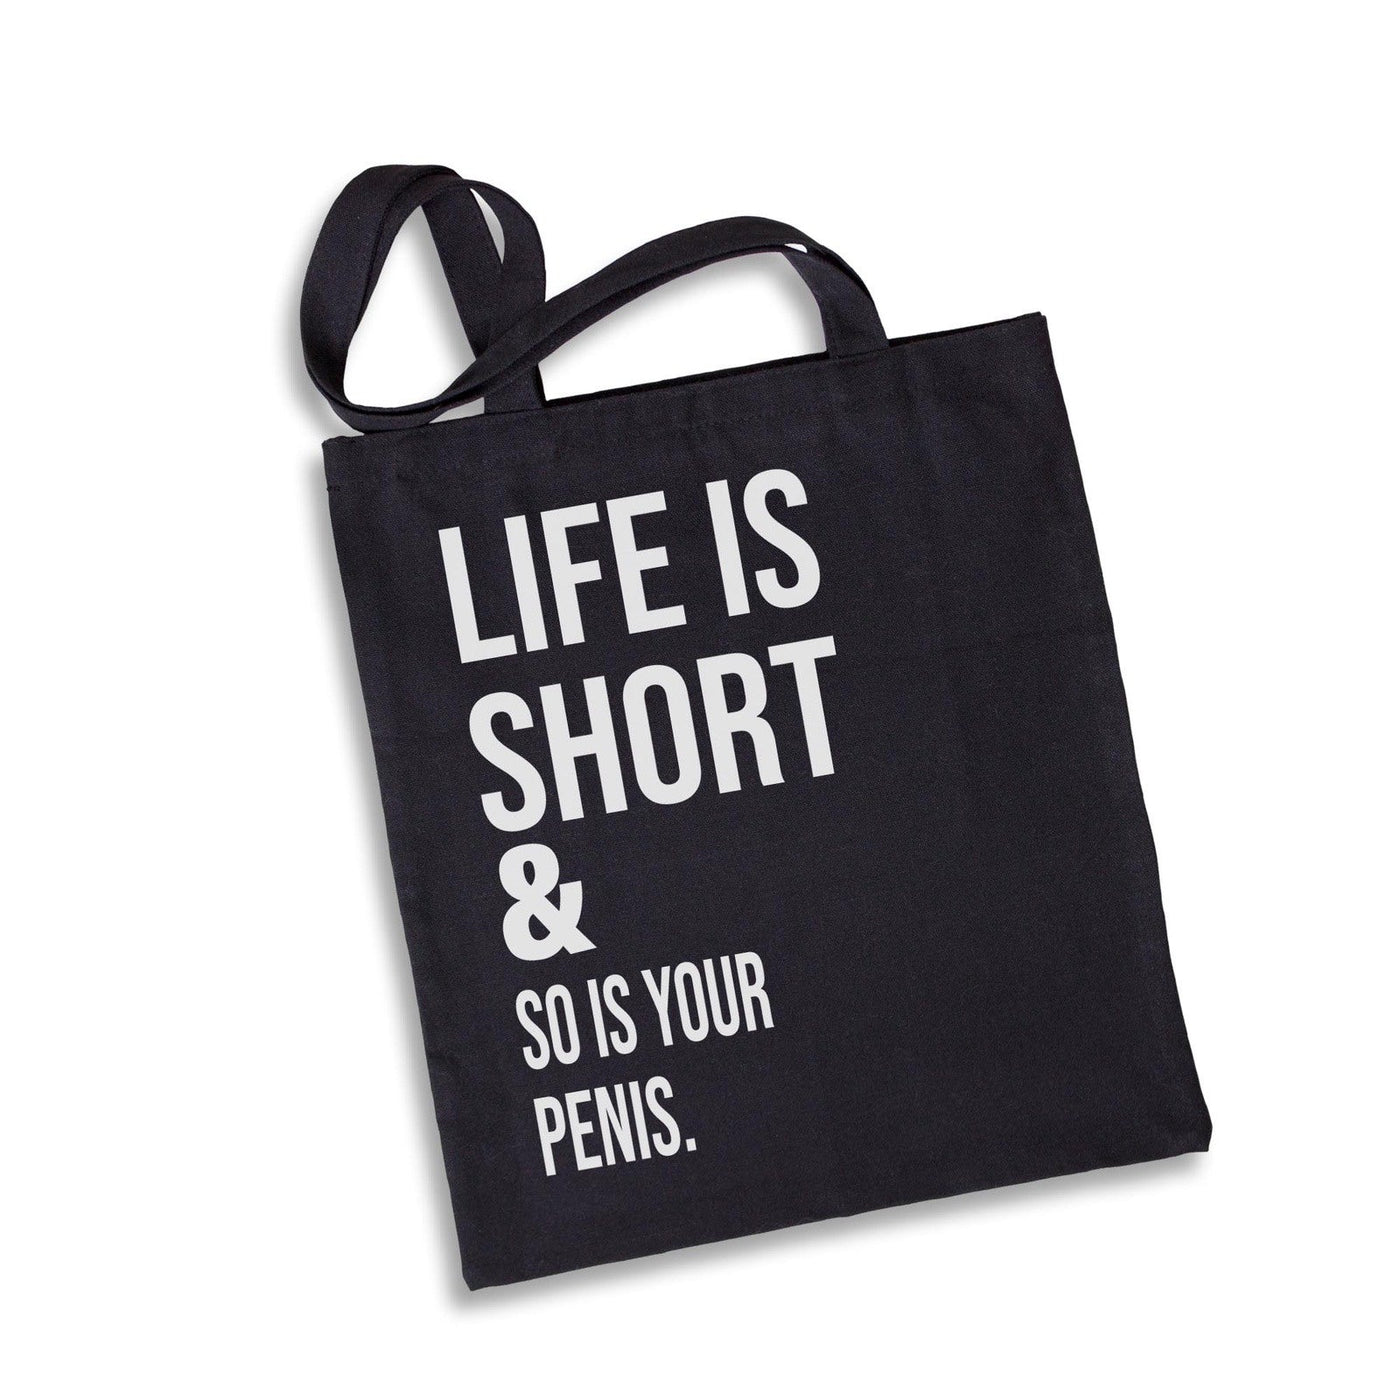 Bild: Baumwolltasche - Life is short and so is your penis. Geschenkidee